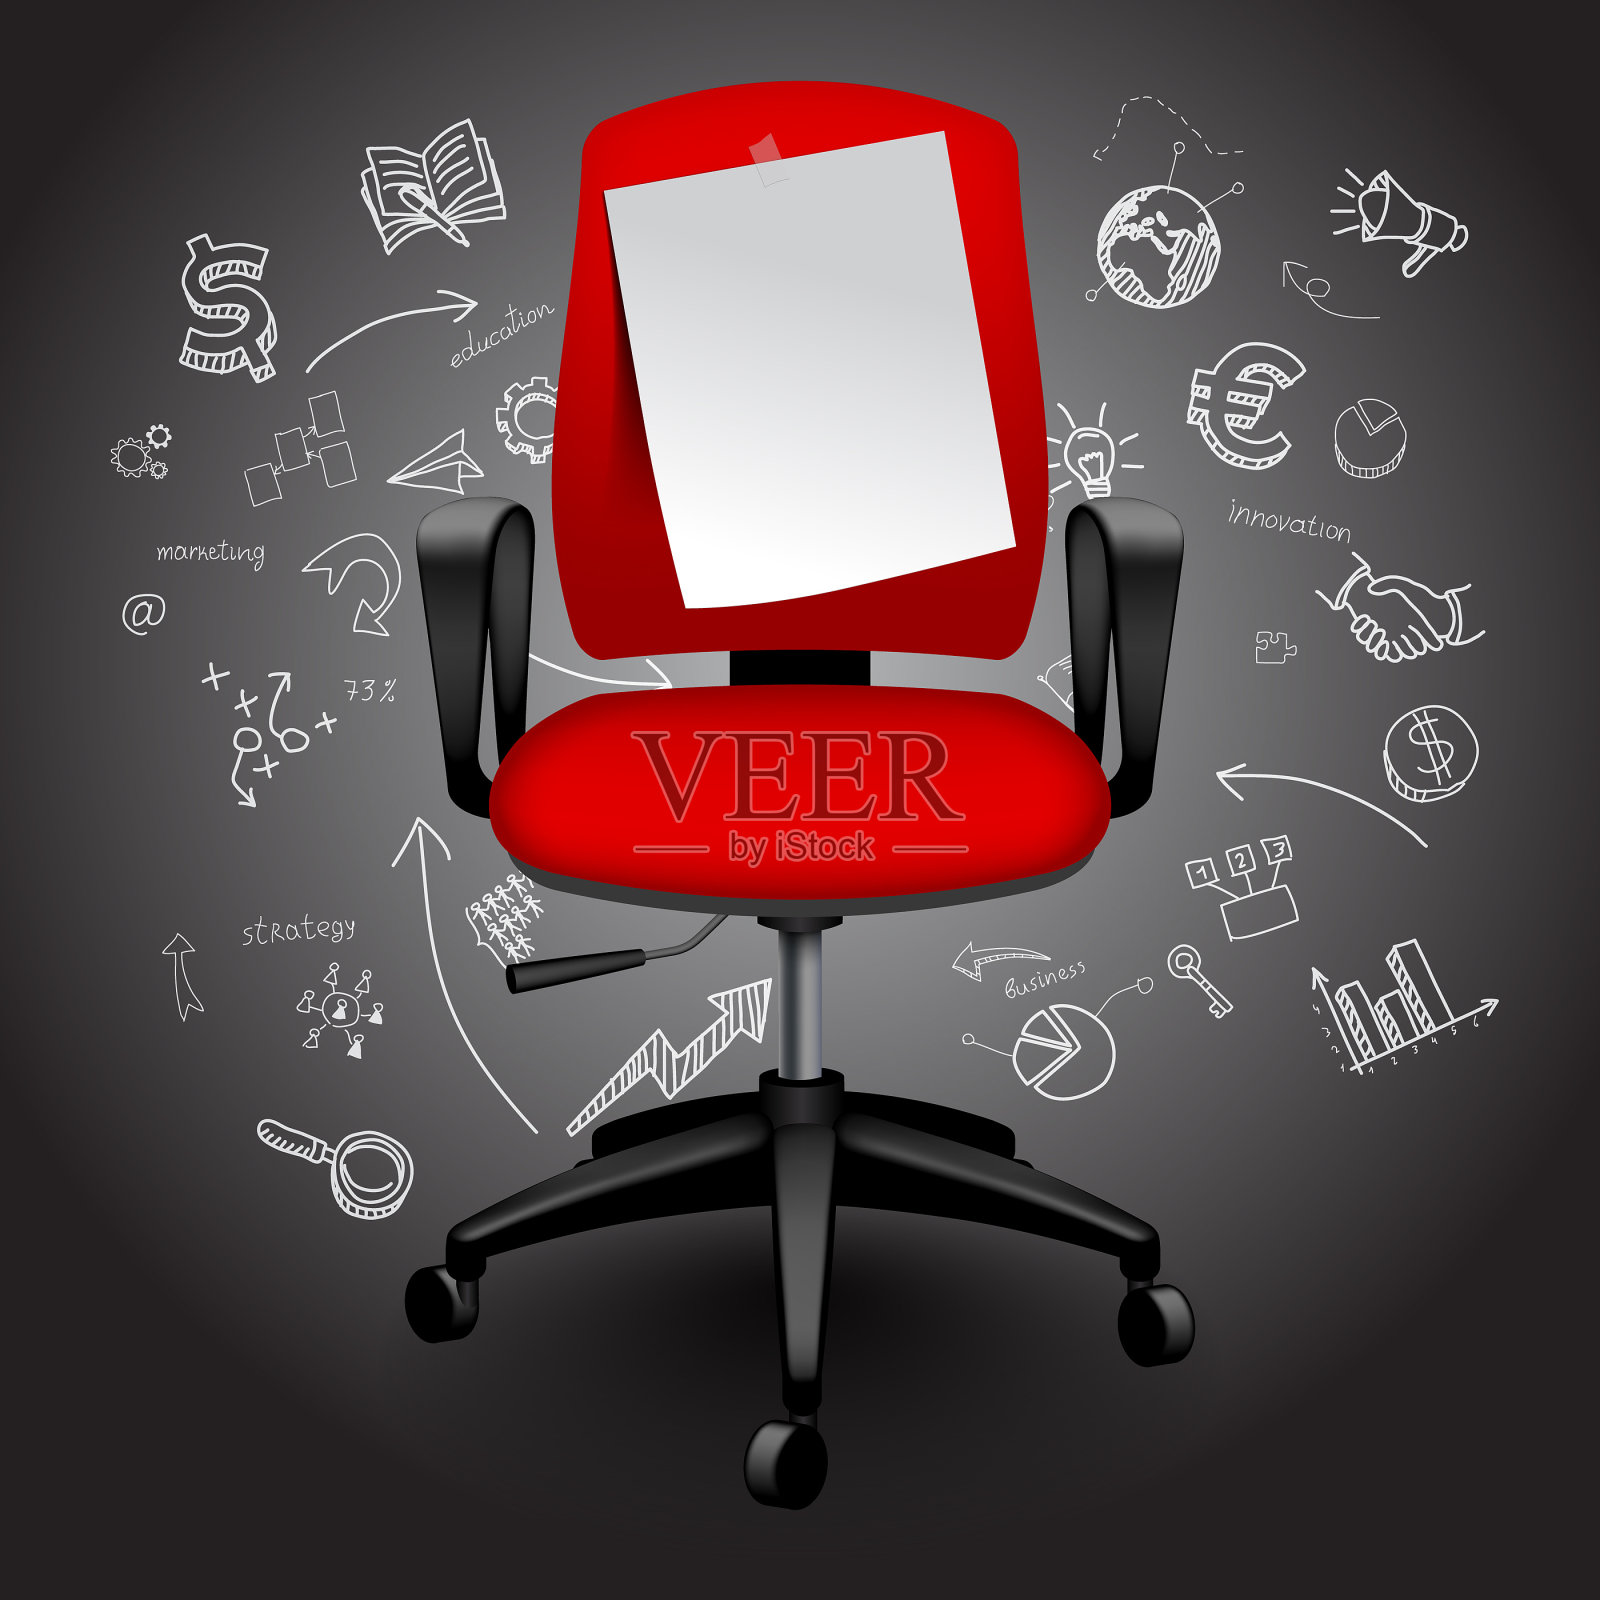 红色的商业椅子与通知纸上手绘的商业图标背景插画图片素材